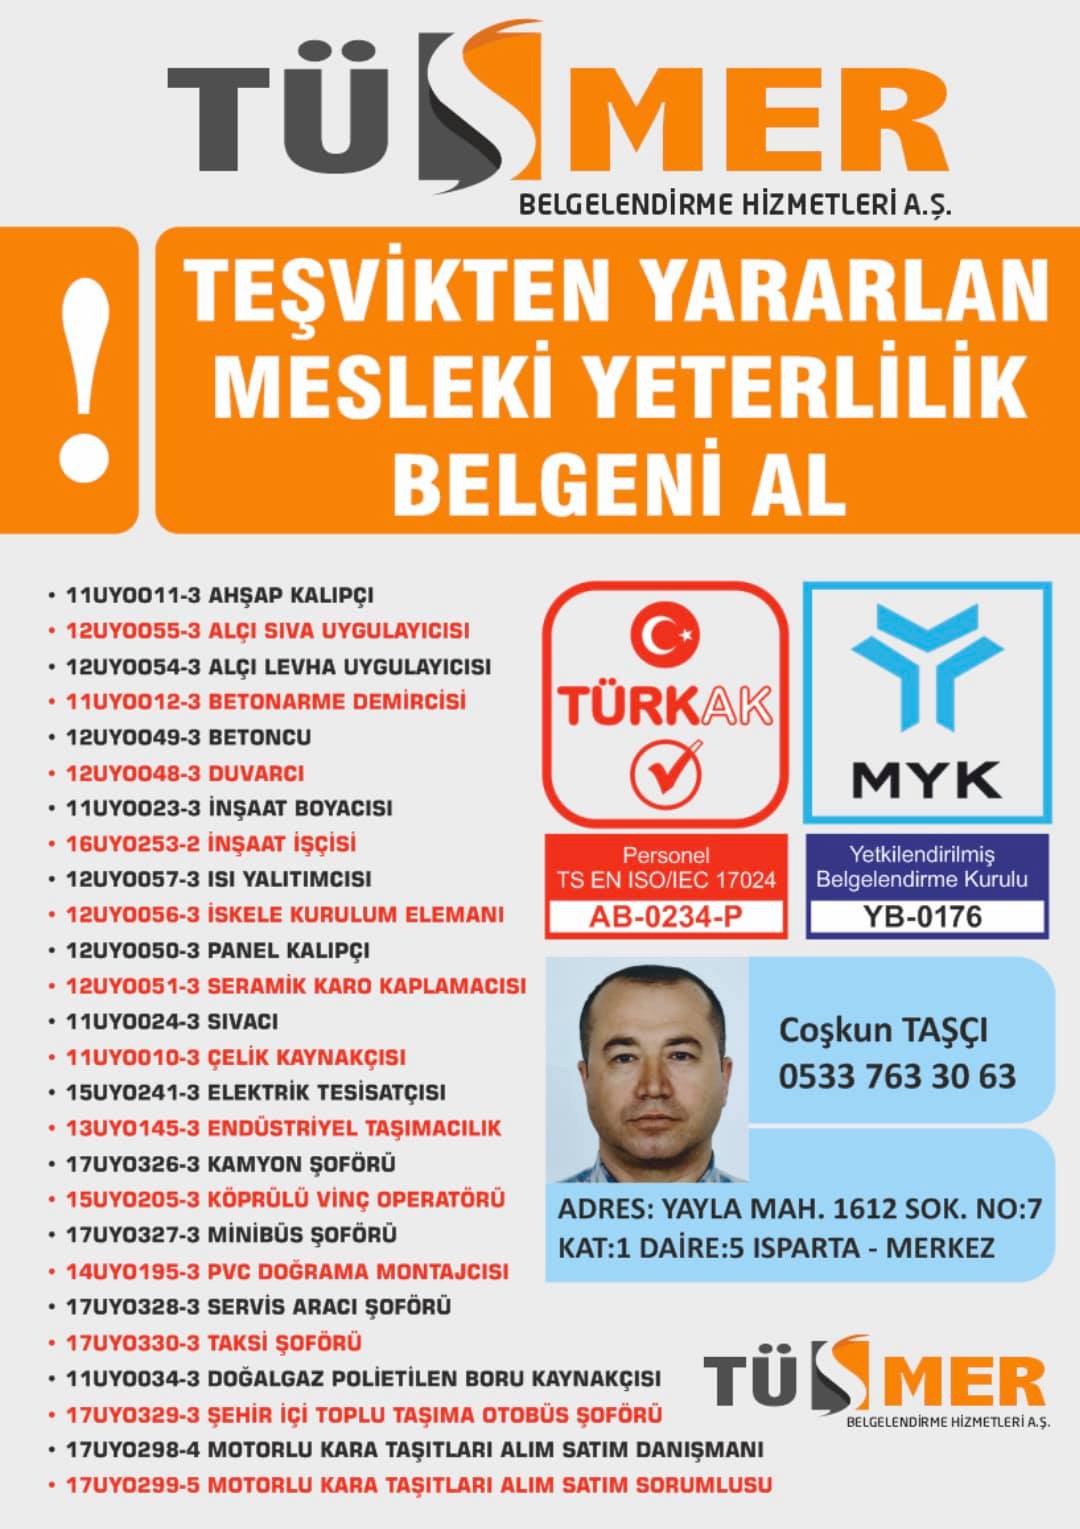 MYK MESLEKİ YETERLİLİK BELGESİ Zühtüpaşa Kadıköy İstanbul